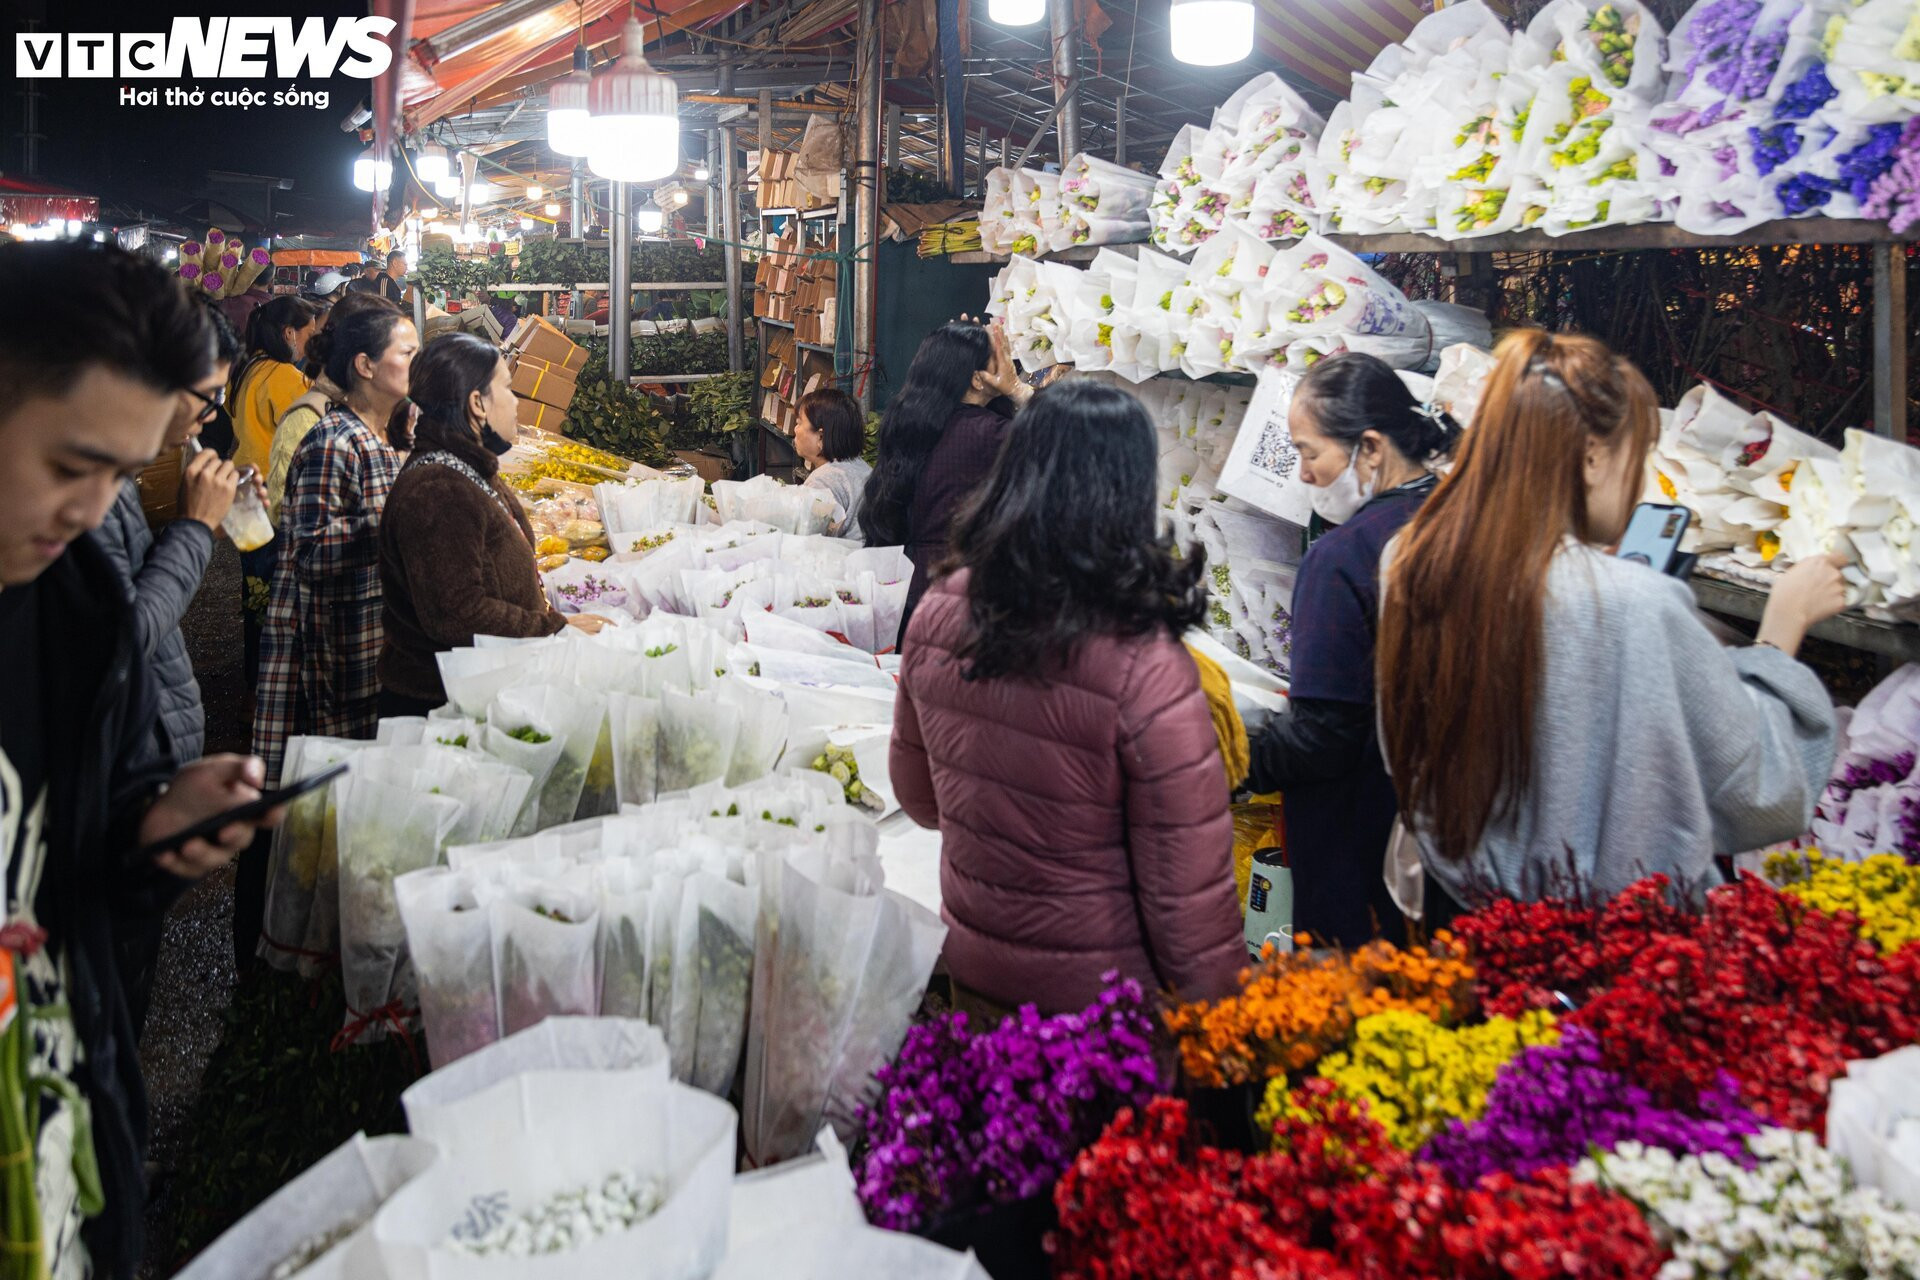 Chợ hoa tươi lớn nhất Hà Nội nhộn nhịp suốt đêm trước ngày 8/3 - 18